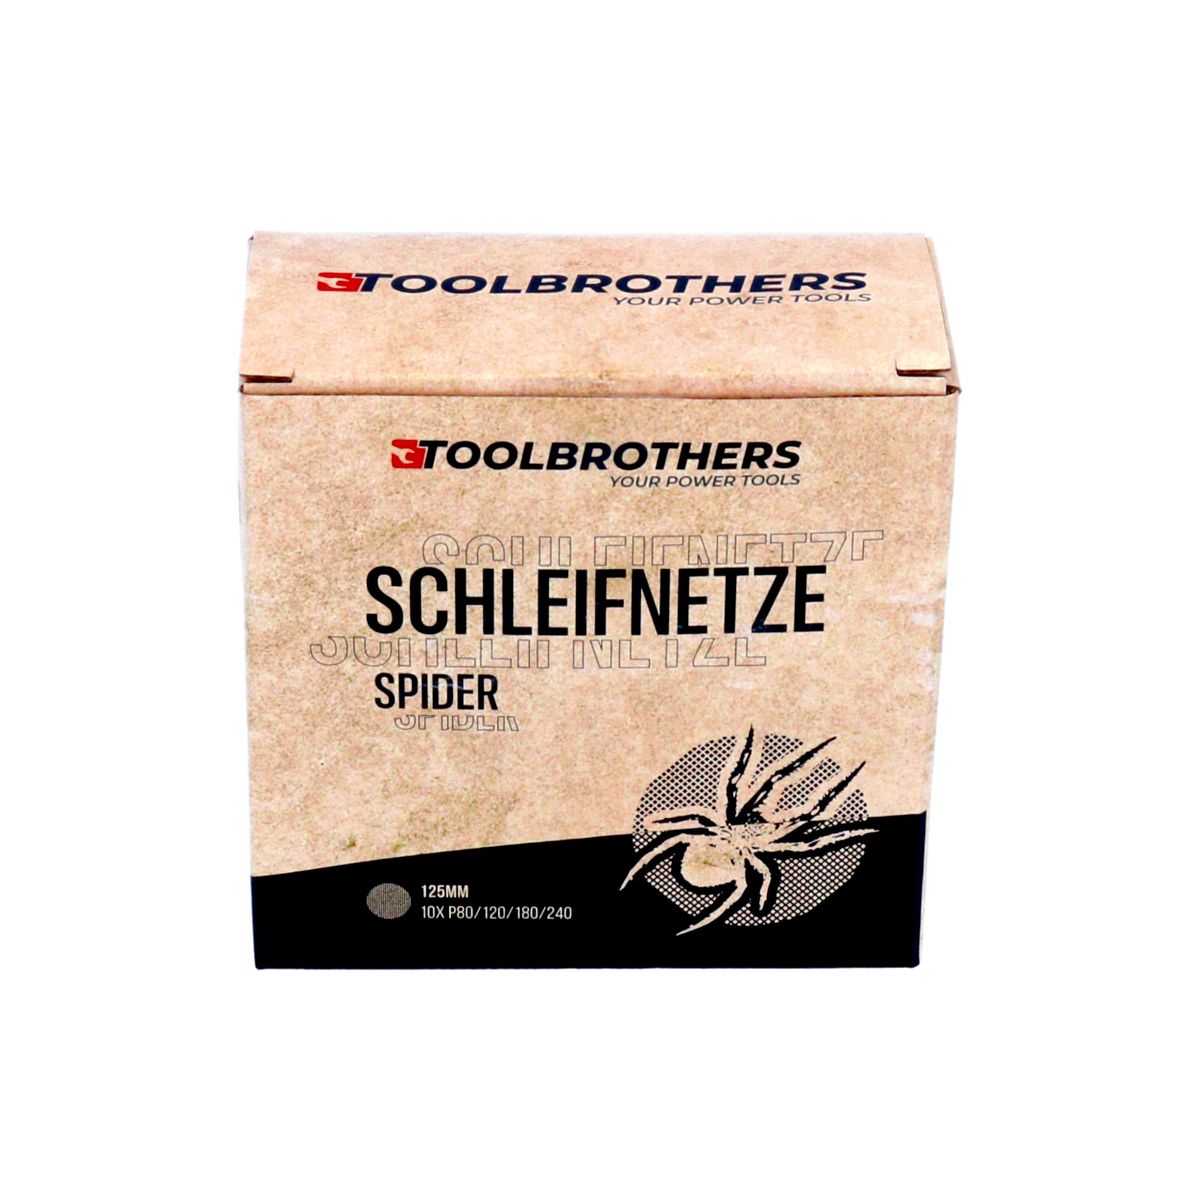 Toolbrothers SPIDER Schleifset Netzschleifmittel 2 Packungen 80x Schleifnetze 125mm Klett je 20x P80 / P120 / P180 / 240 für Hartholz, Weichholz, Lack, Stein, Stahl, Aluminium, Furnier - Toolbrothers